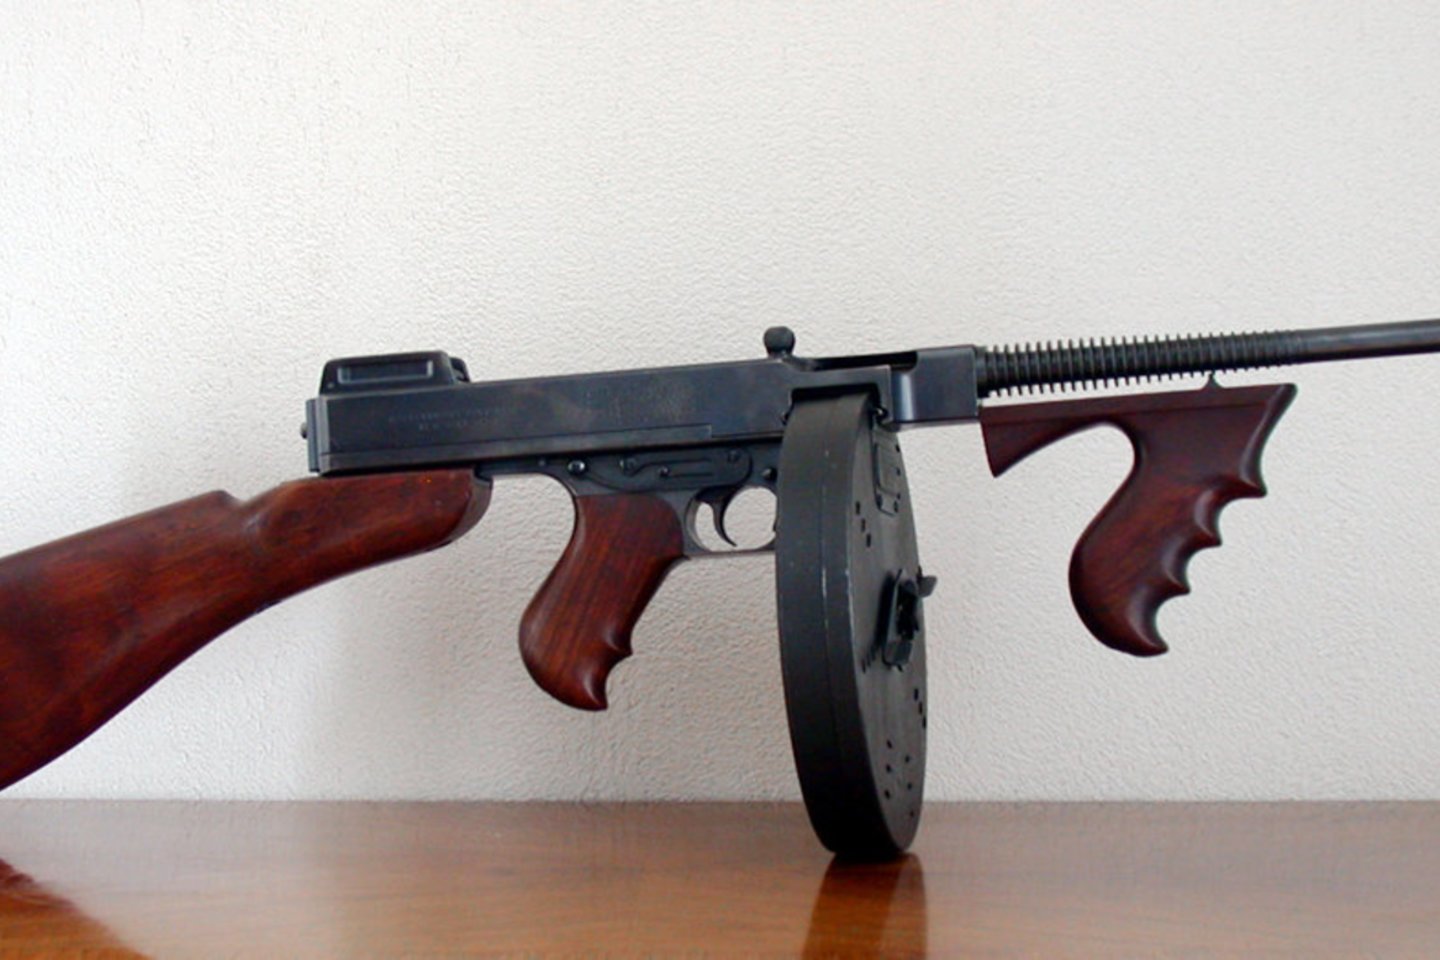 Šiandien ginklų entuziastai ir kolekcionieriai už standartinį „Thompson TSMG M1“ moka 3 tūkst. dolerių arba nuo 25 iki 40 tūkst. dolerių už kolekcinį ginklą aukcione. <br>Wikipedia nuotr. 